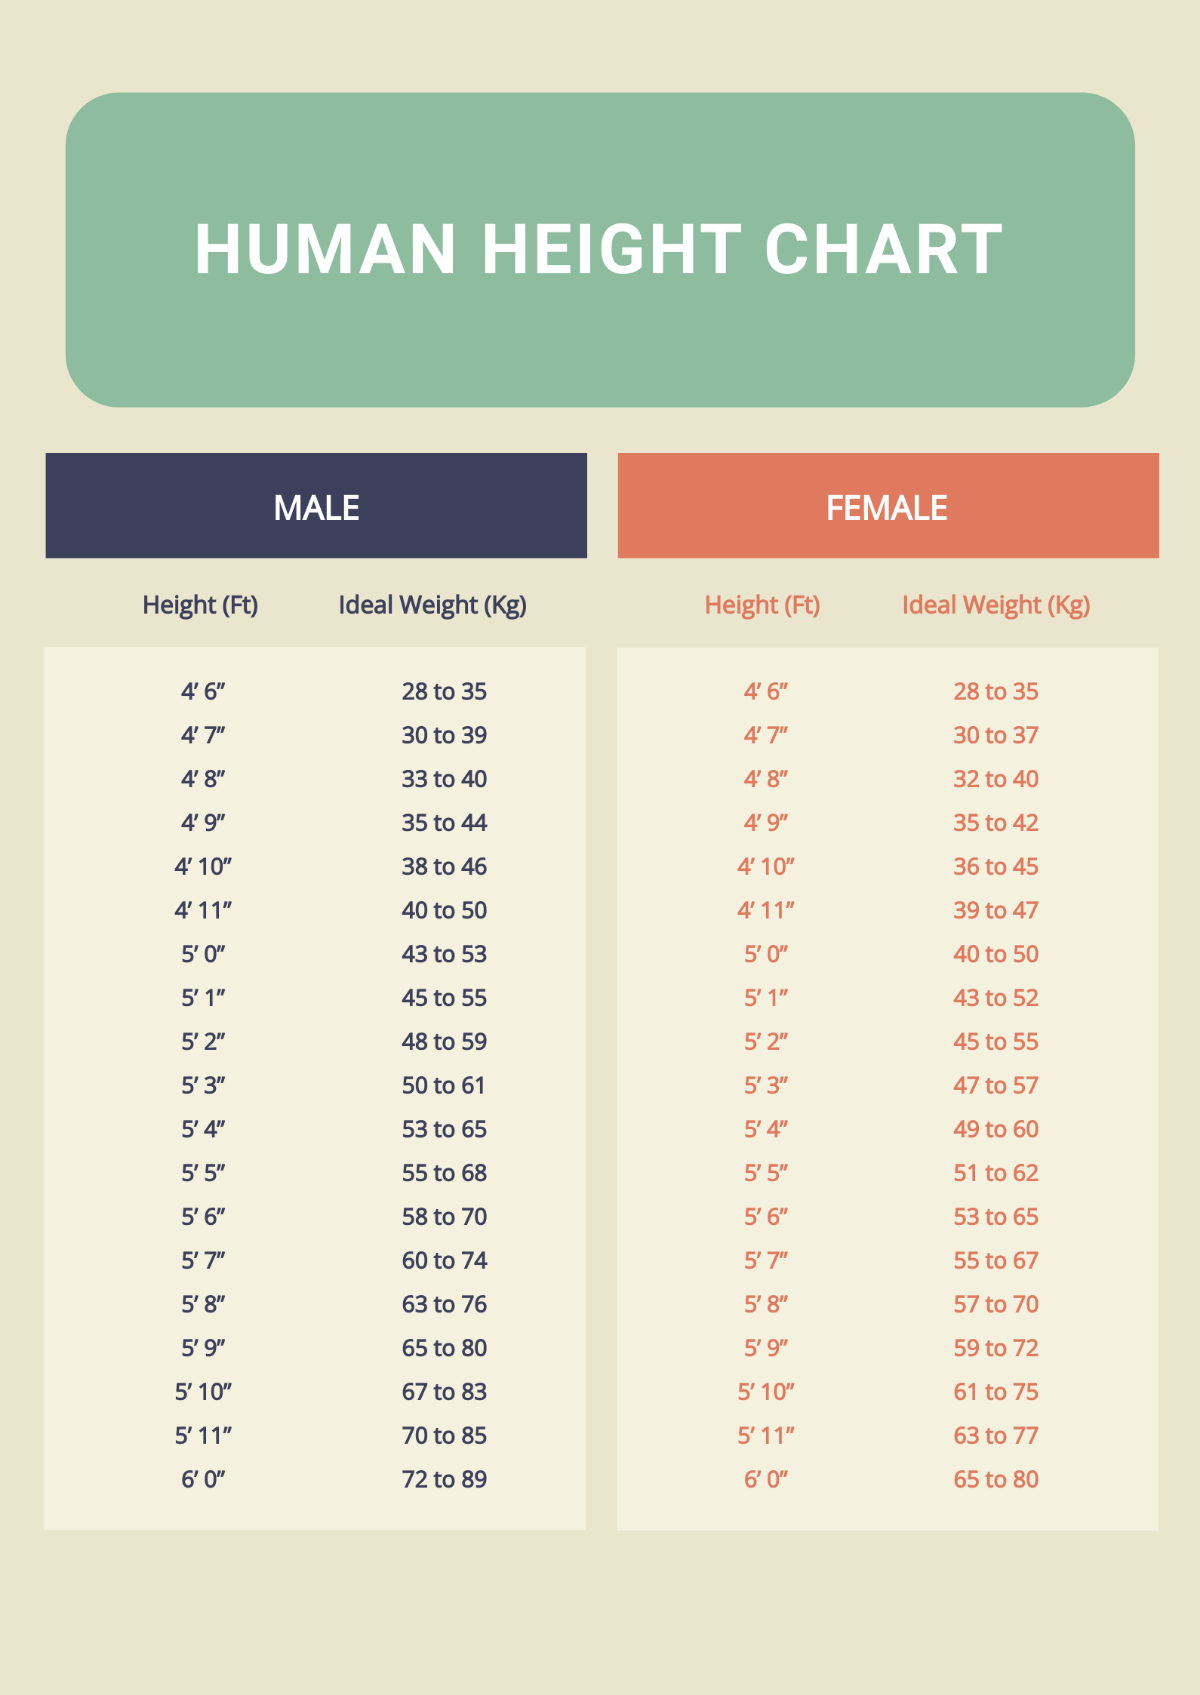 Human Height Chart Template